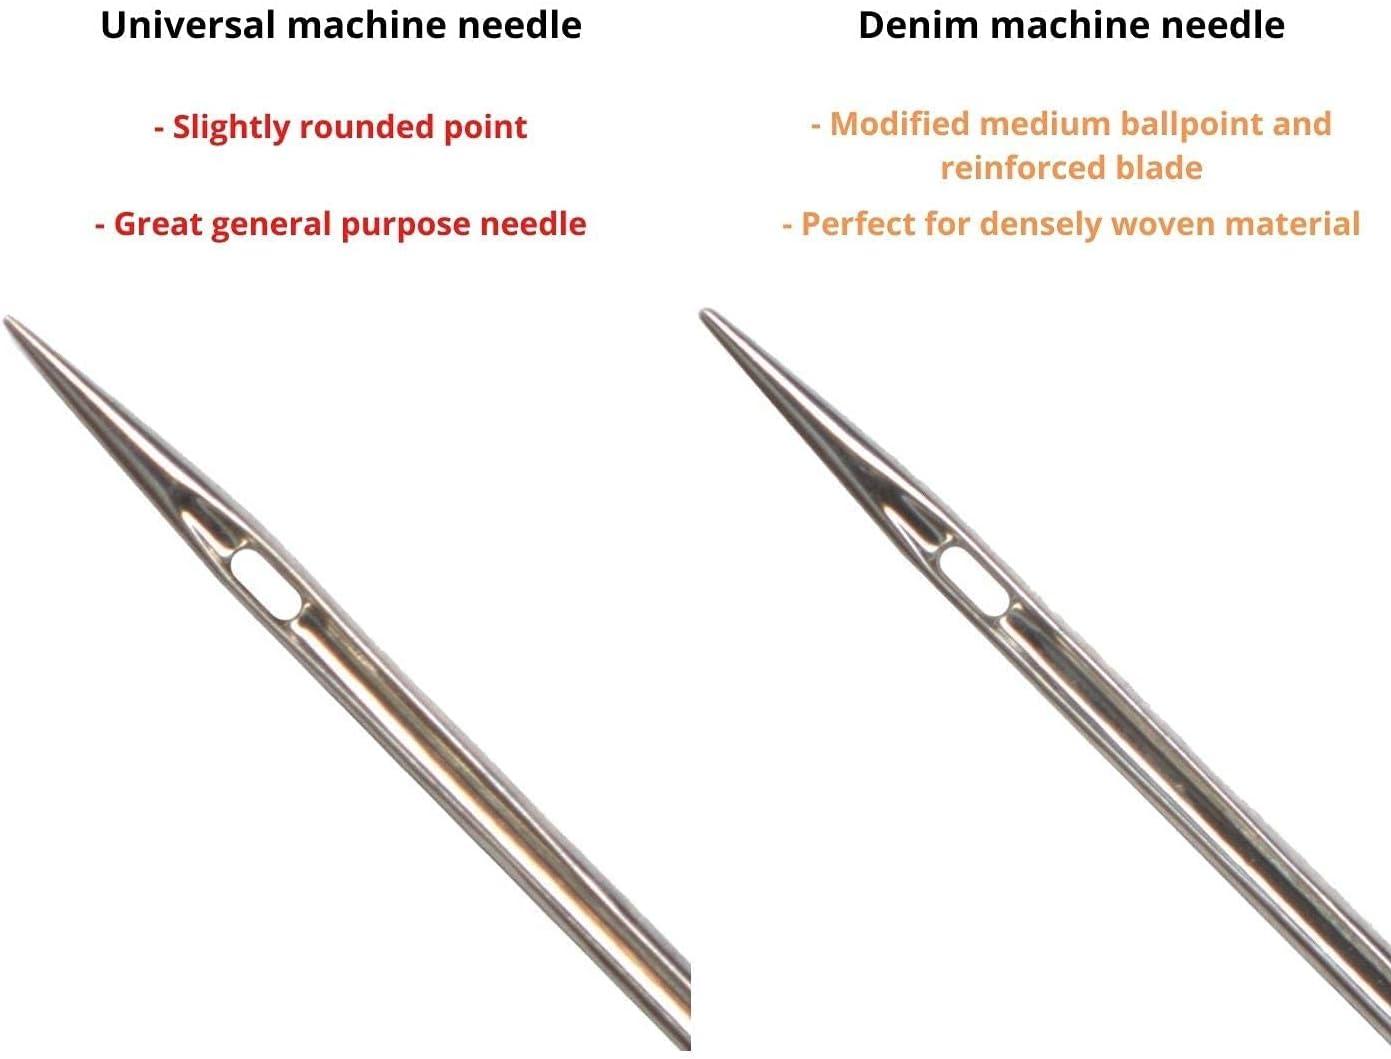 Singer Assorted Universal Machine Needles 5 Pack